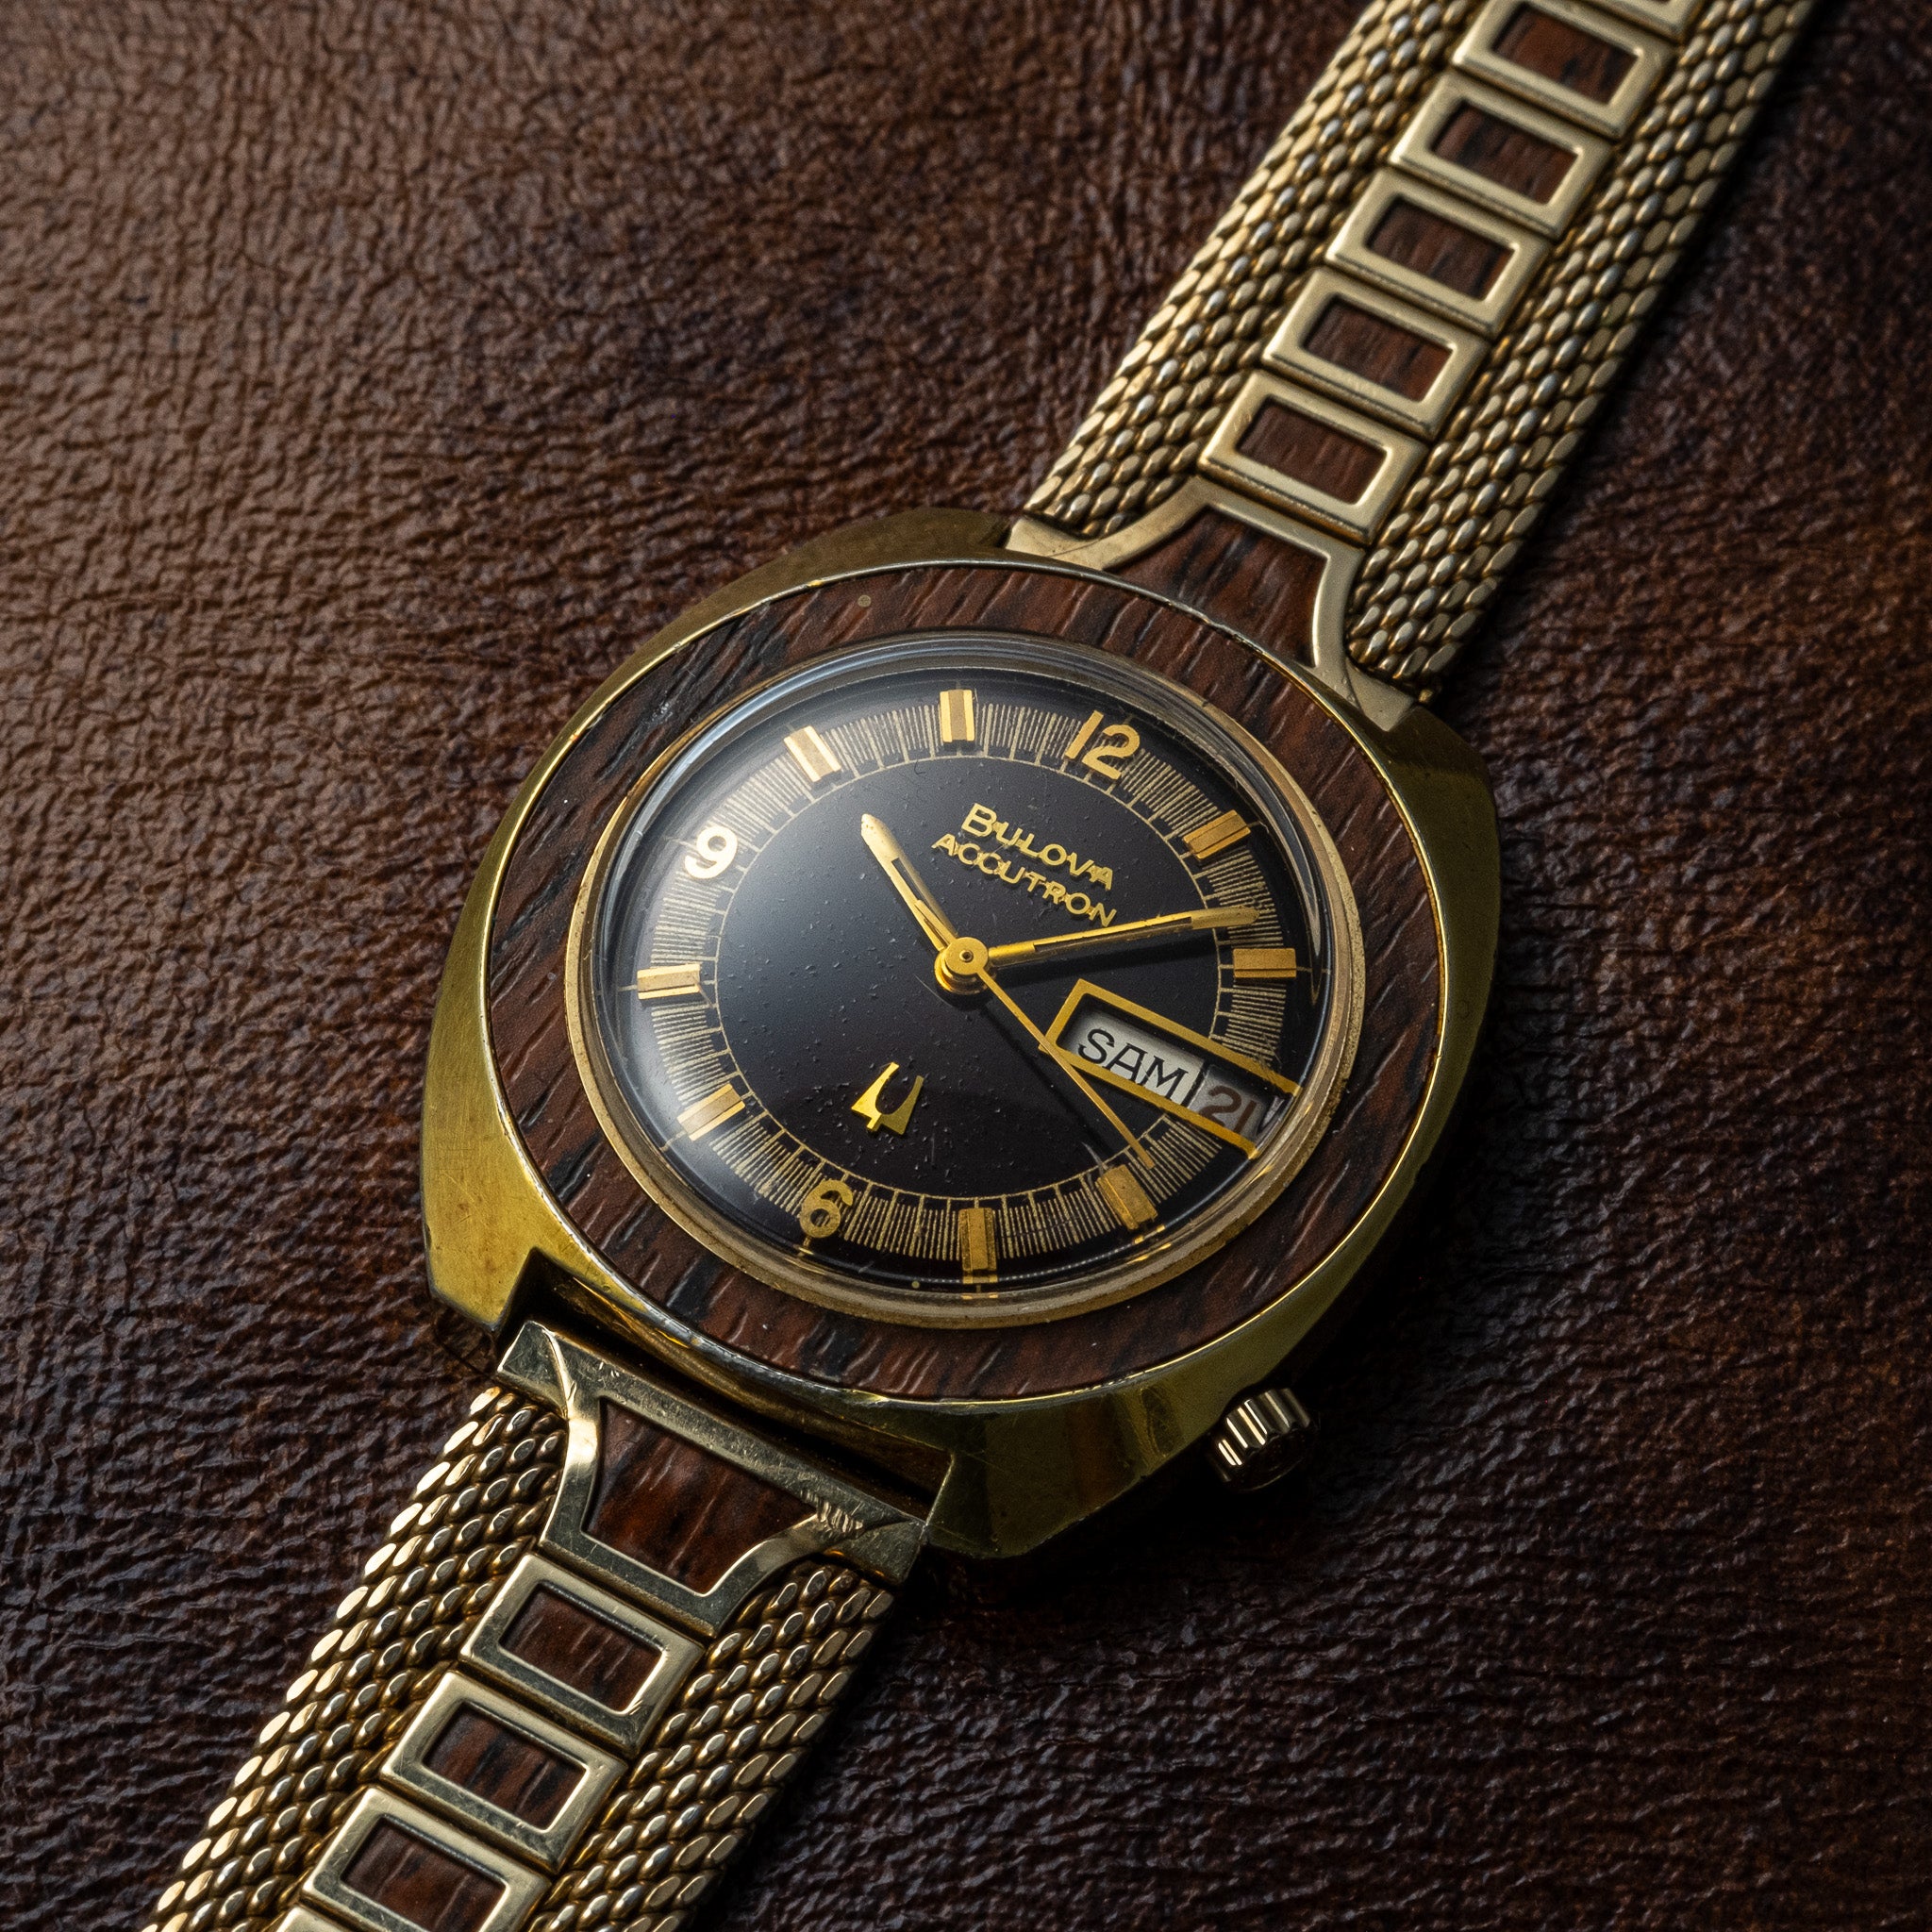 Accutron Watches | J.R.DUNN